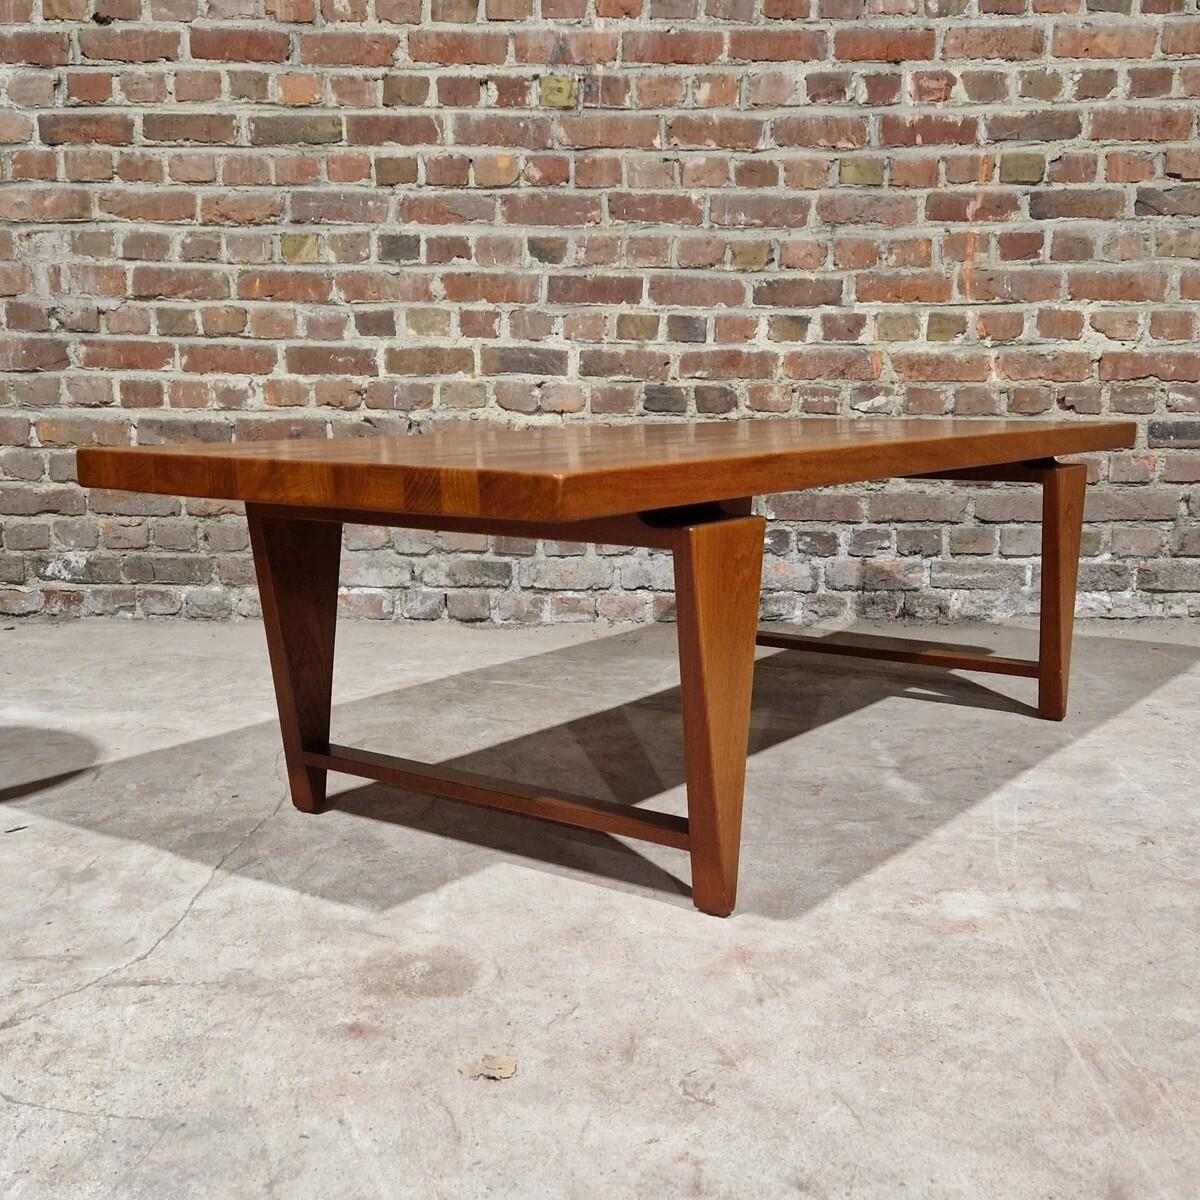 Esstisch aus massivem Teakholz, entworfen von Illum Wikkelsø in Dänemark. Das Holz weist eine schöne Maserung auf der Tischplatte auf, und der dicke Fuß verleiht dem Tisch ein einzigartiges geometrisches Aussehen. 